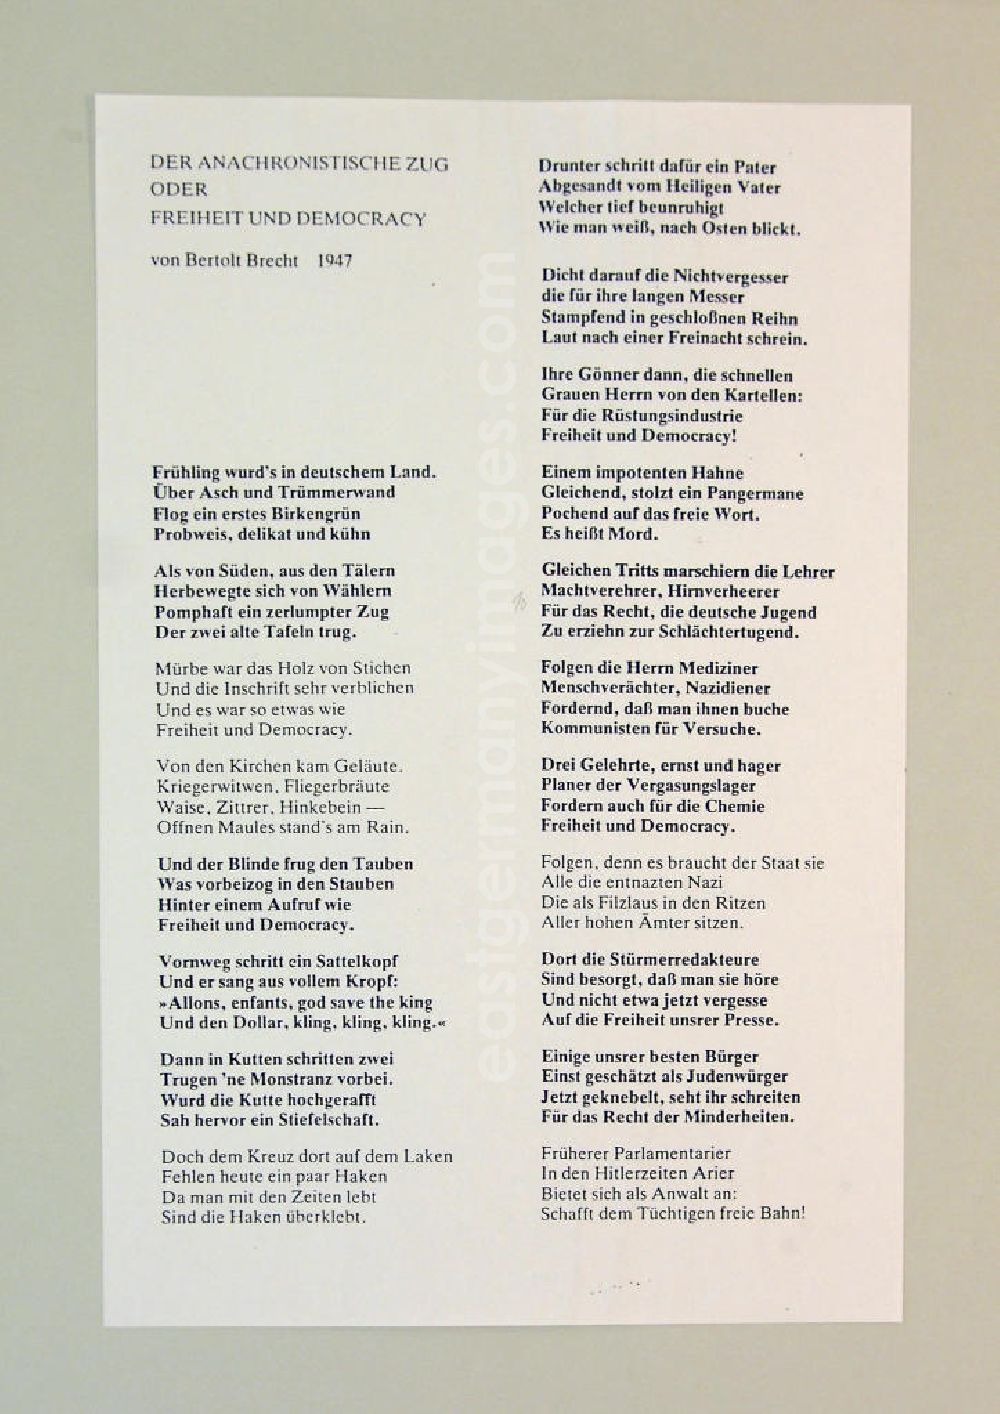 GDR picture archive: Berlin - Gedicht Teil 1 Der Anachronistische Zug oder Freiheit und Democracy von Bertolt Brecht aus dem Jahr 1947, Grundlage für Herbert Sandbergs Zyklus Der anachronistische Zug aus den Jahren 1982/83.